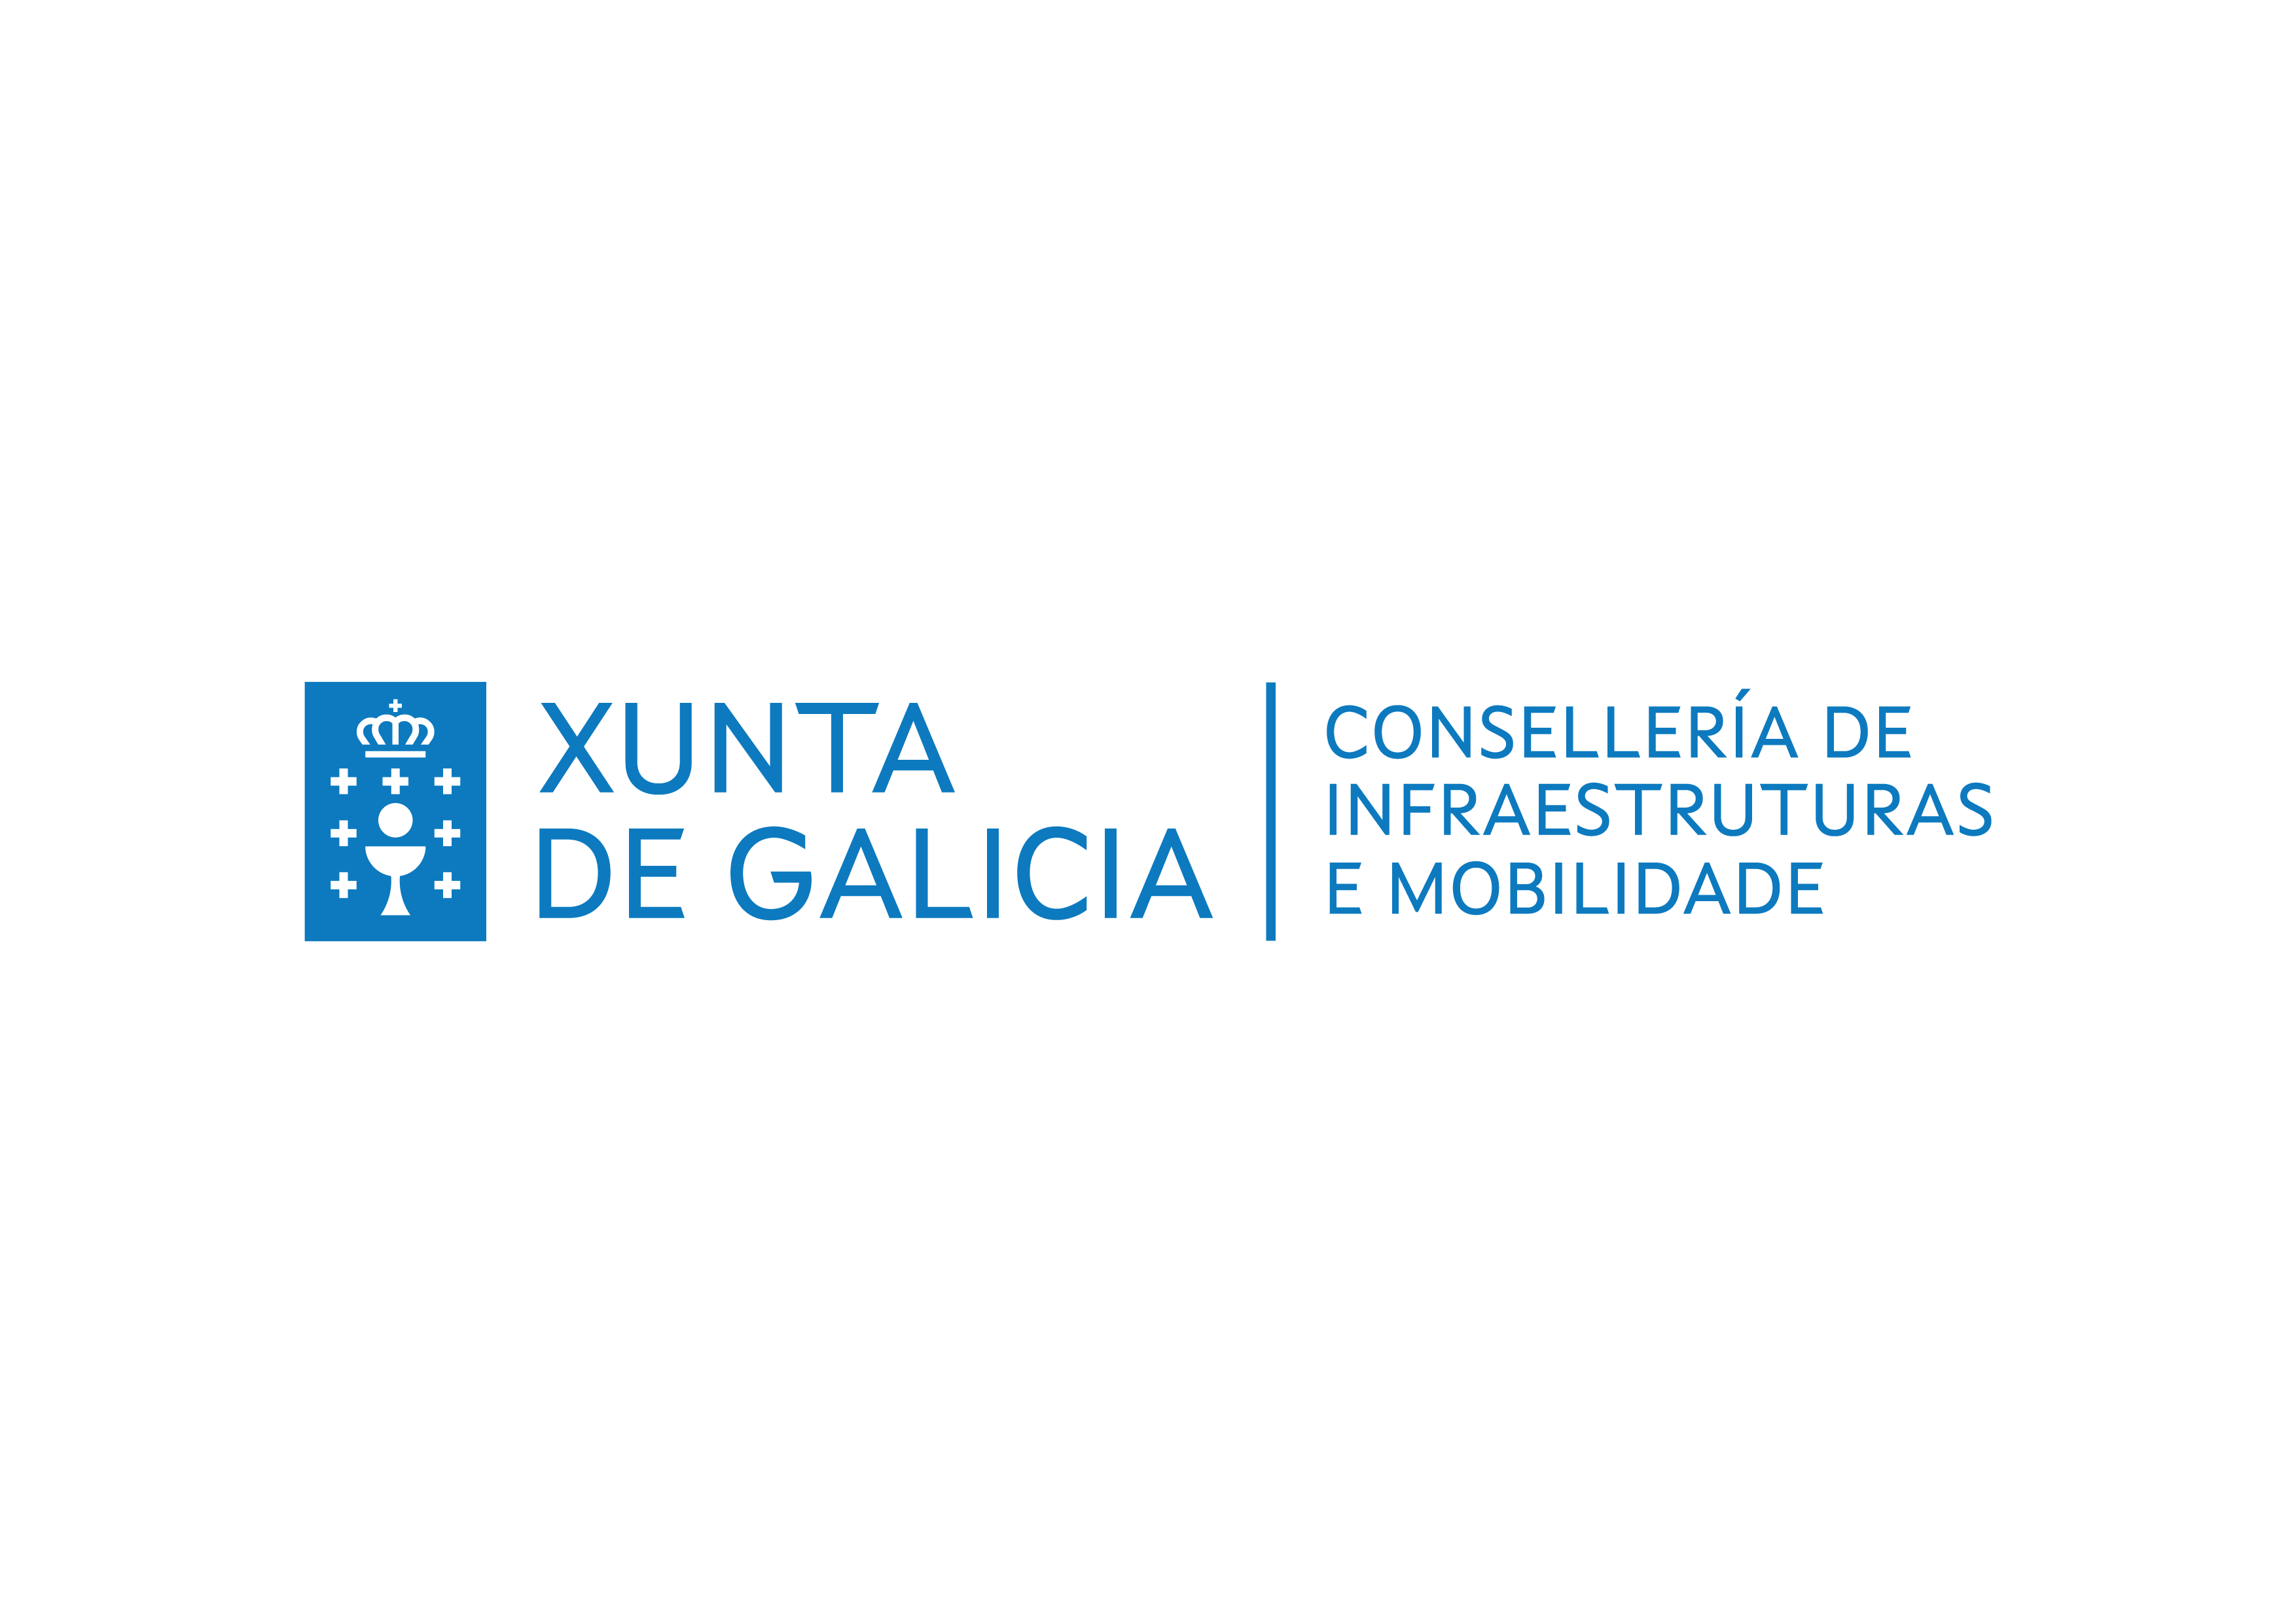 Deputación Provincial Ourense logotipo